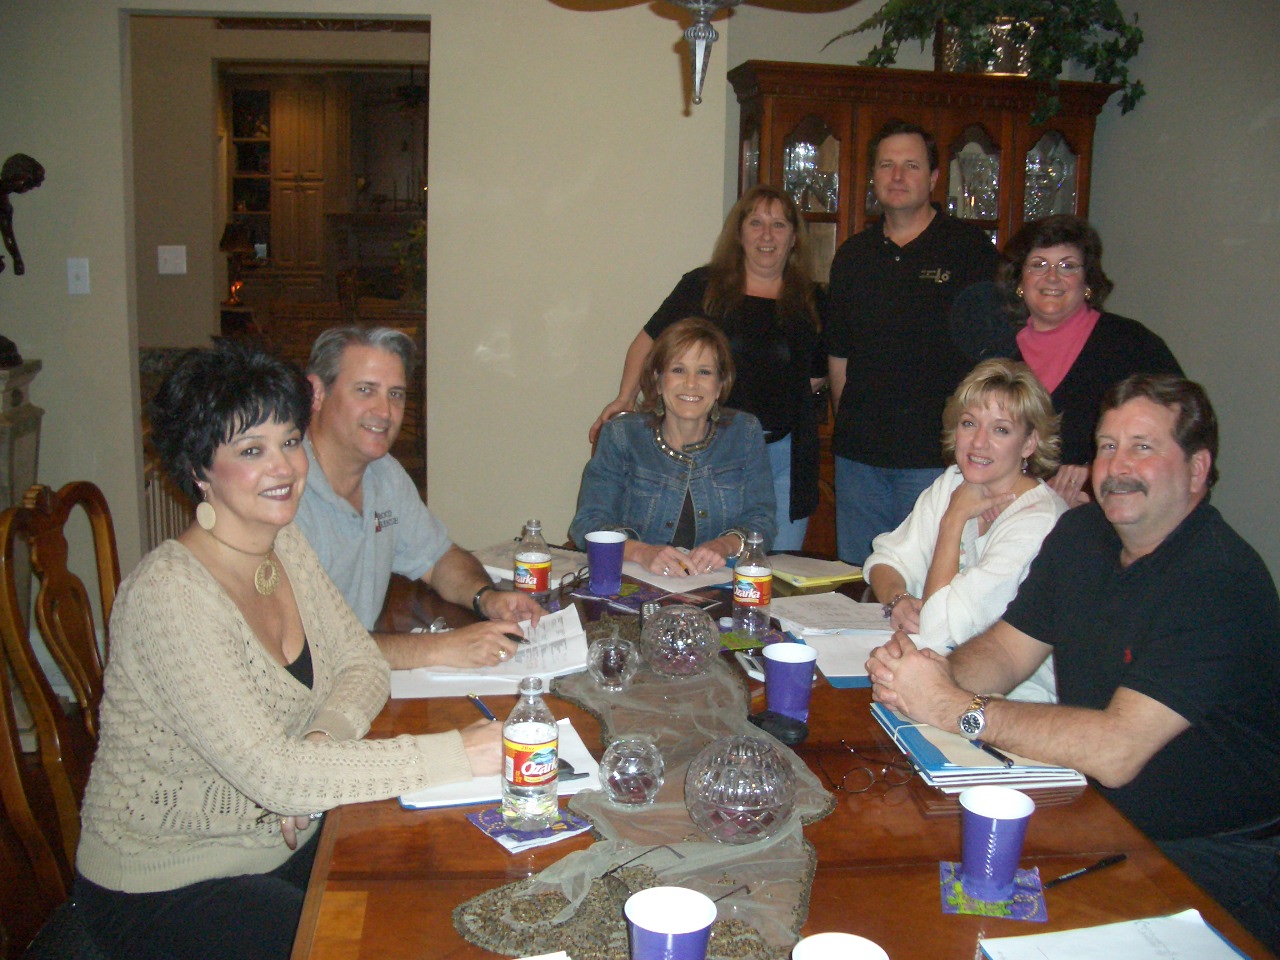 Reunion Committee Meeting, Feb 7 - Antoinette, Randy, Susie, Leslie, Jeff, Karen, Penny, Robert.  Missing Lisa, Mike, Sheldon, Cindy, Connie